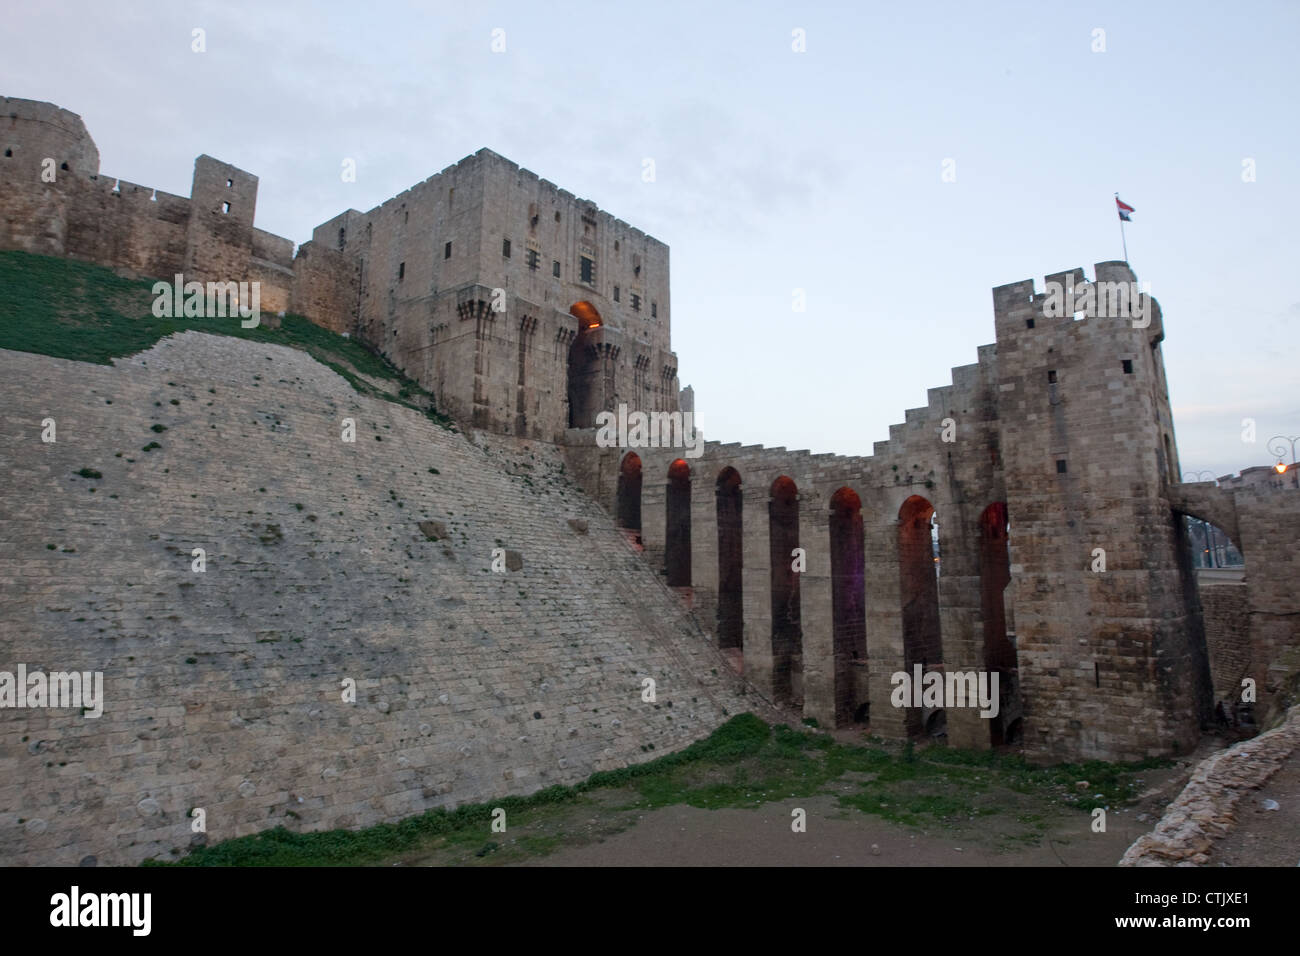 La Cittadella di Aleppo, fortificata medievale palazzo nel centro della città vecchia di Aleppo, Siria settentrionale. Foto Stock